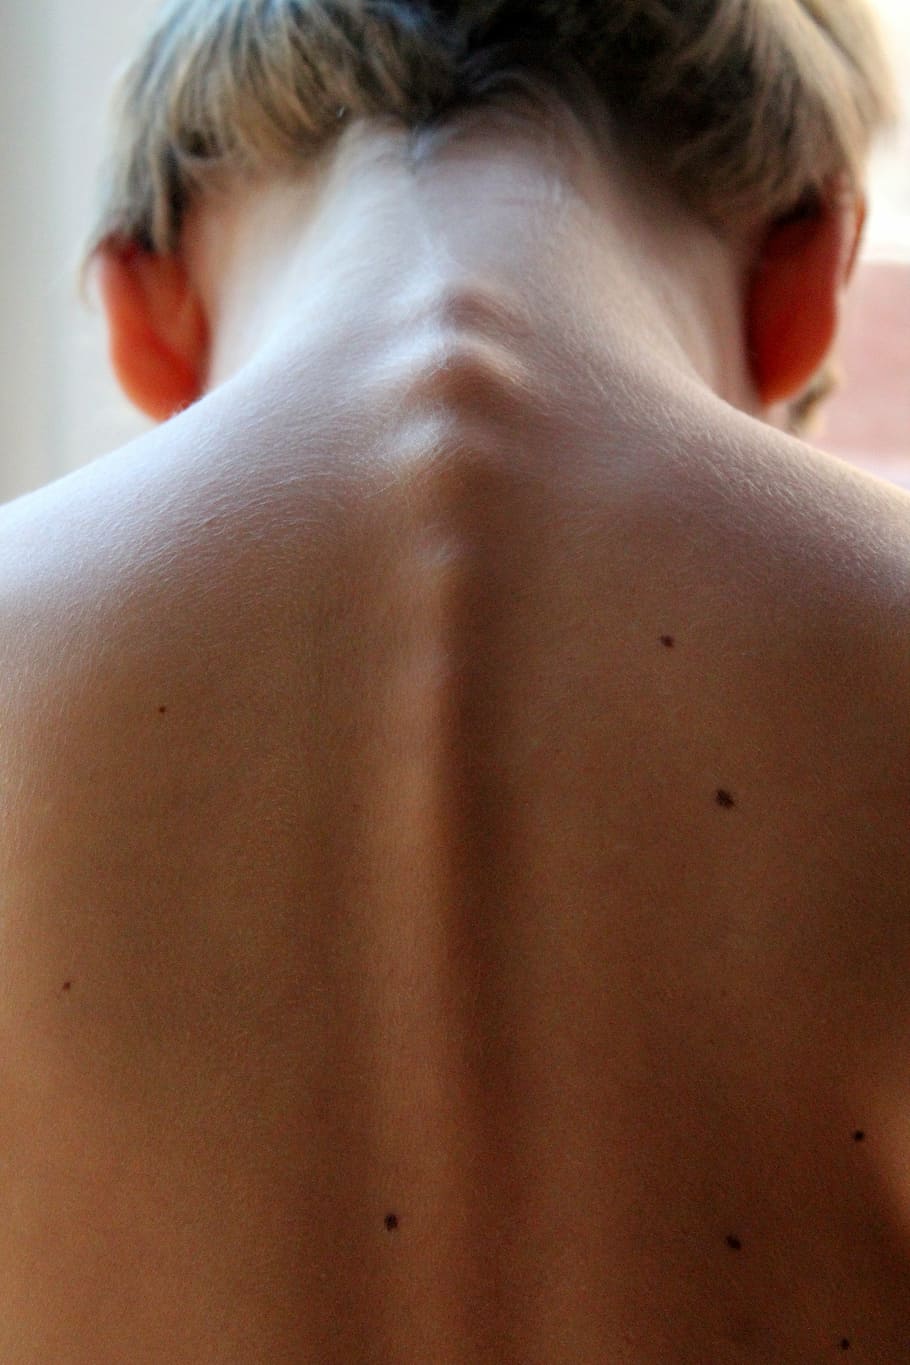 columna vertebral de la mujer, columna vertebral, cabello, espalda, neo, niño, vista posterior, parte del cuerpo humano, piel humana, piel